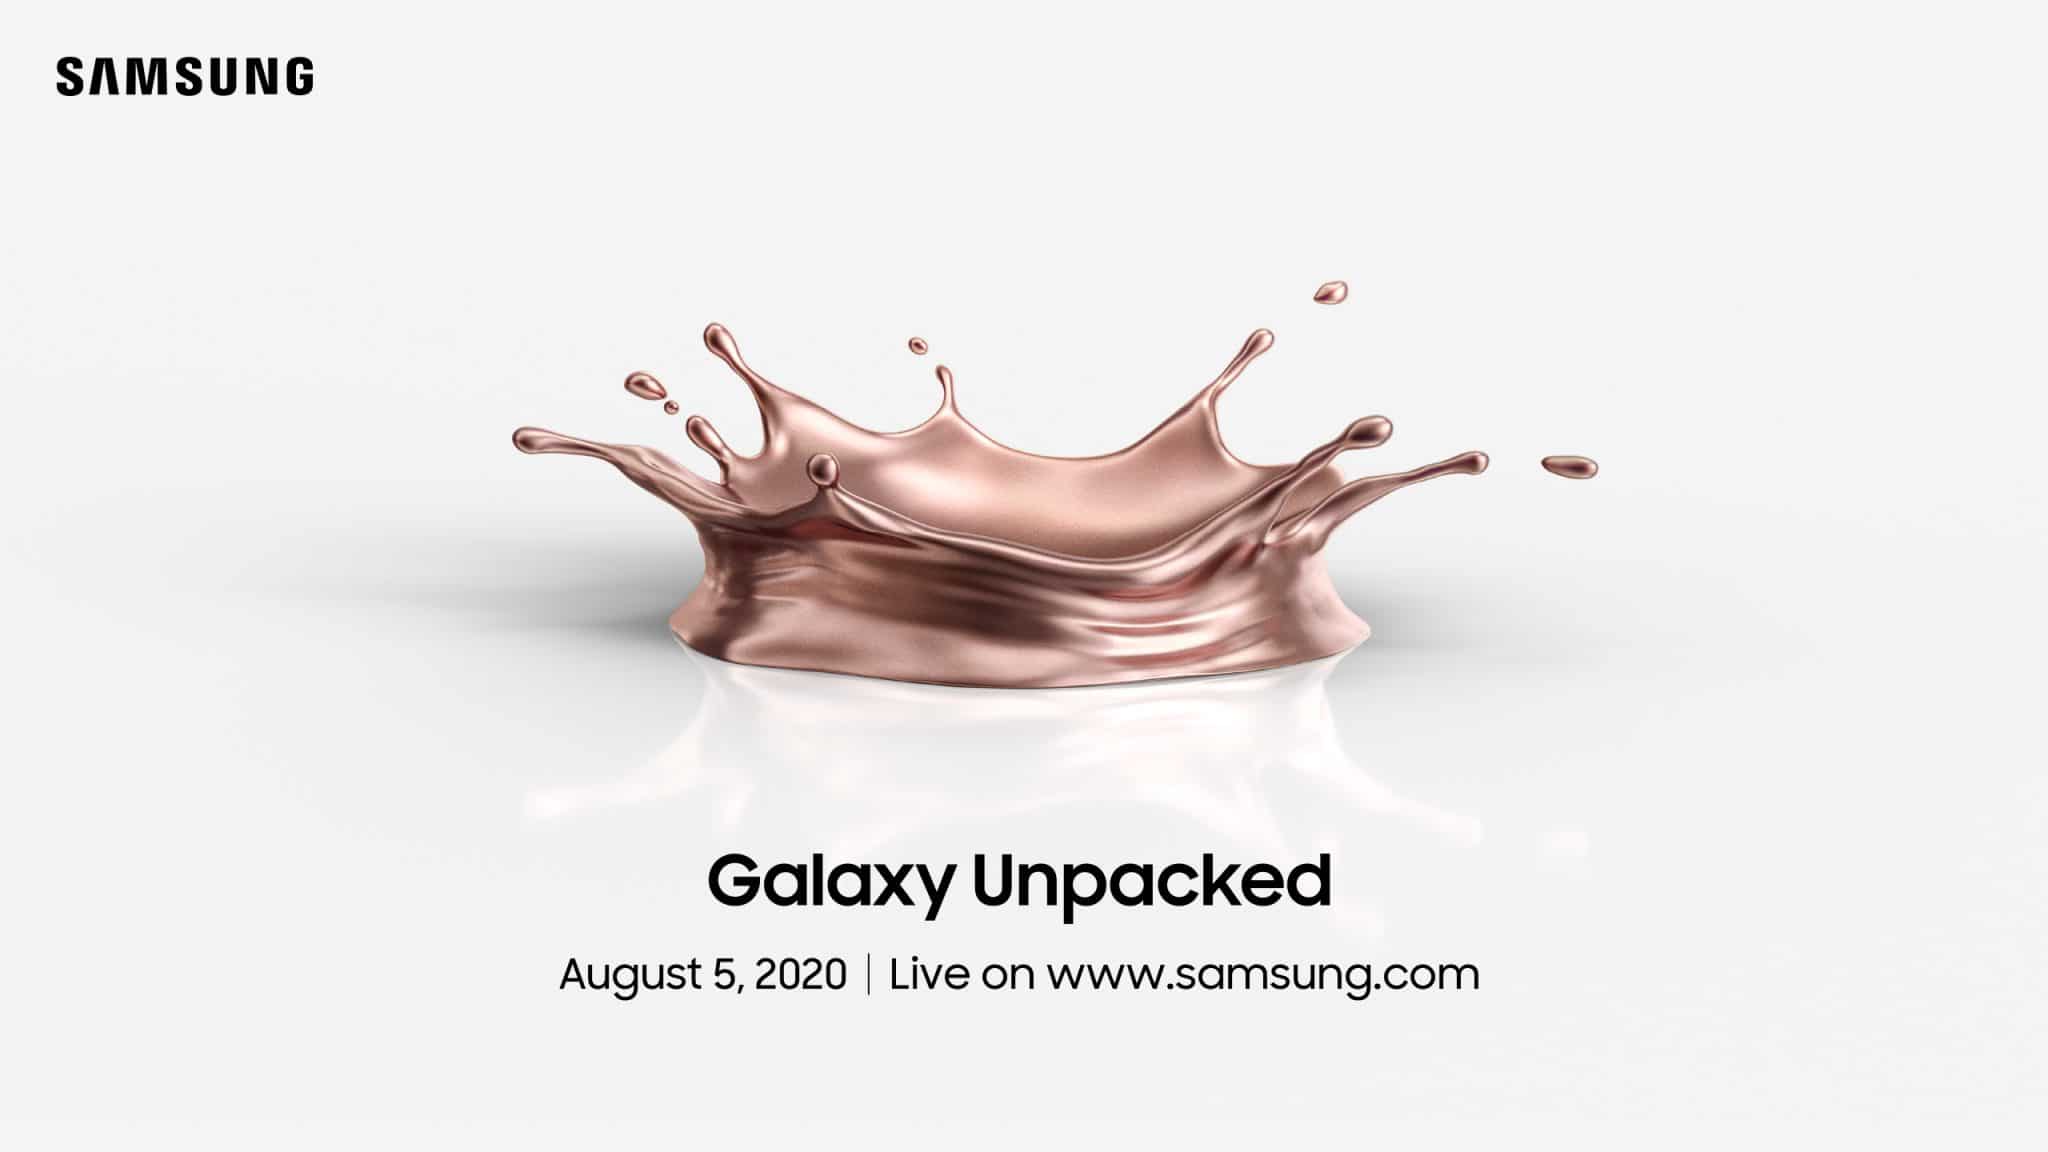 พบกับ Samsung Galaxy Unpacked Virtual Event เปิดตัวสมาร์ทดีไวซ์ล่าสุด วันพุธที่ 5 สิงหาคม เวลา 21.00 น. 1